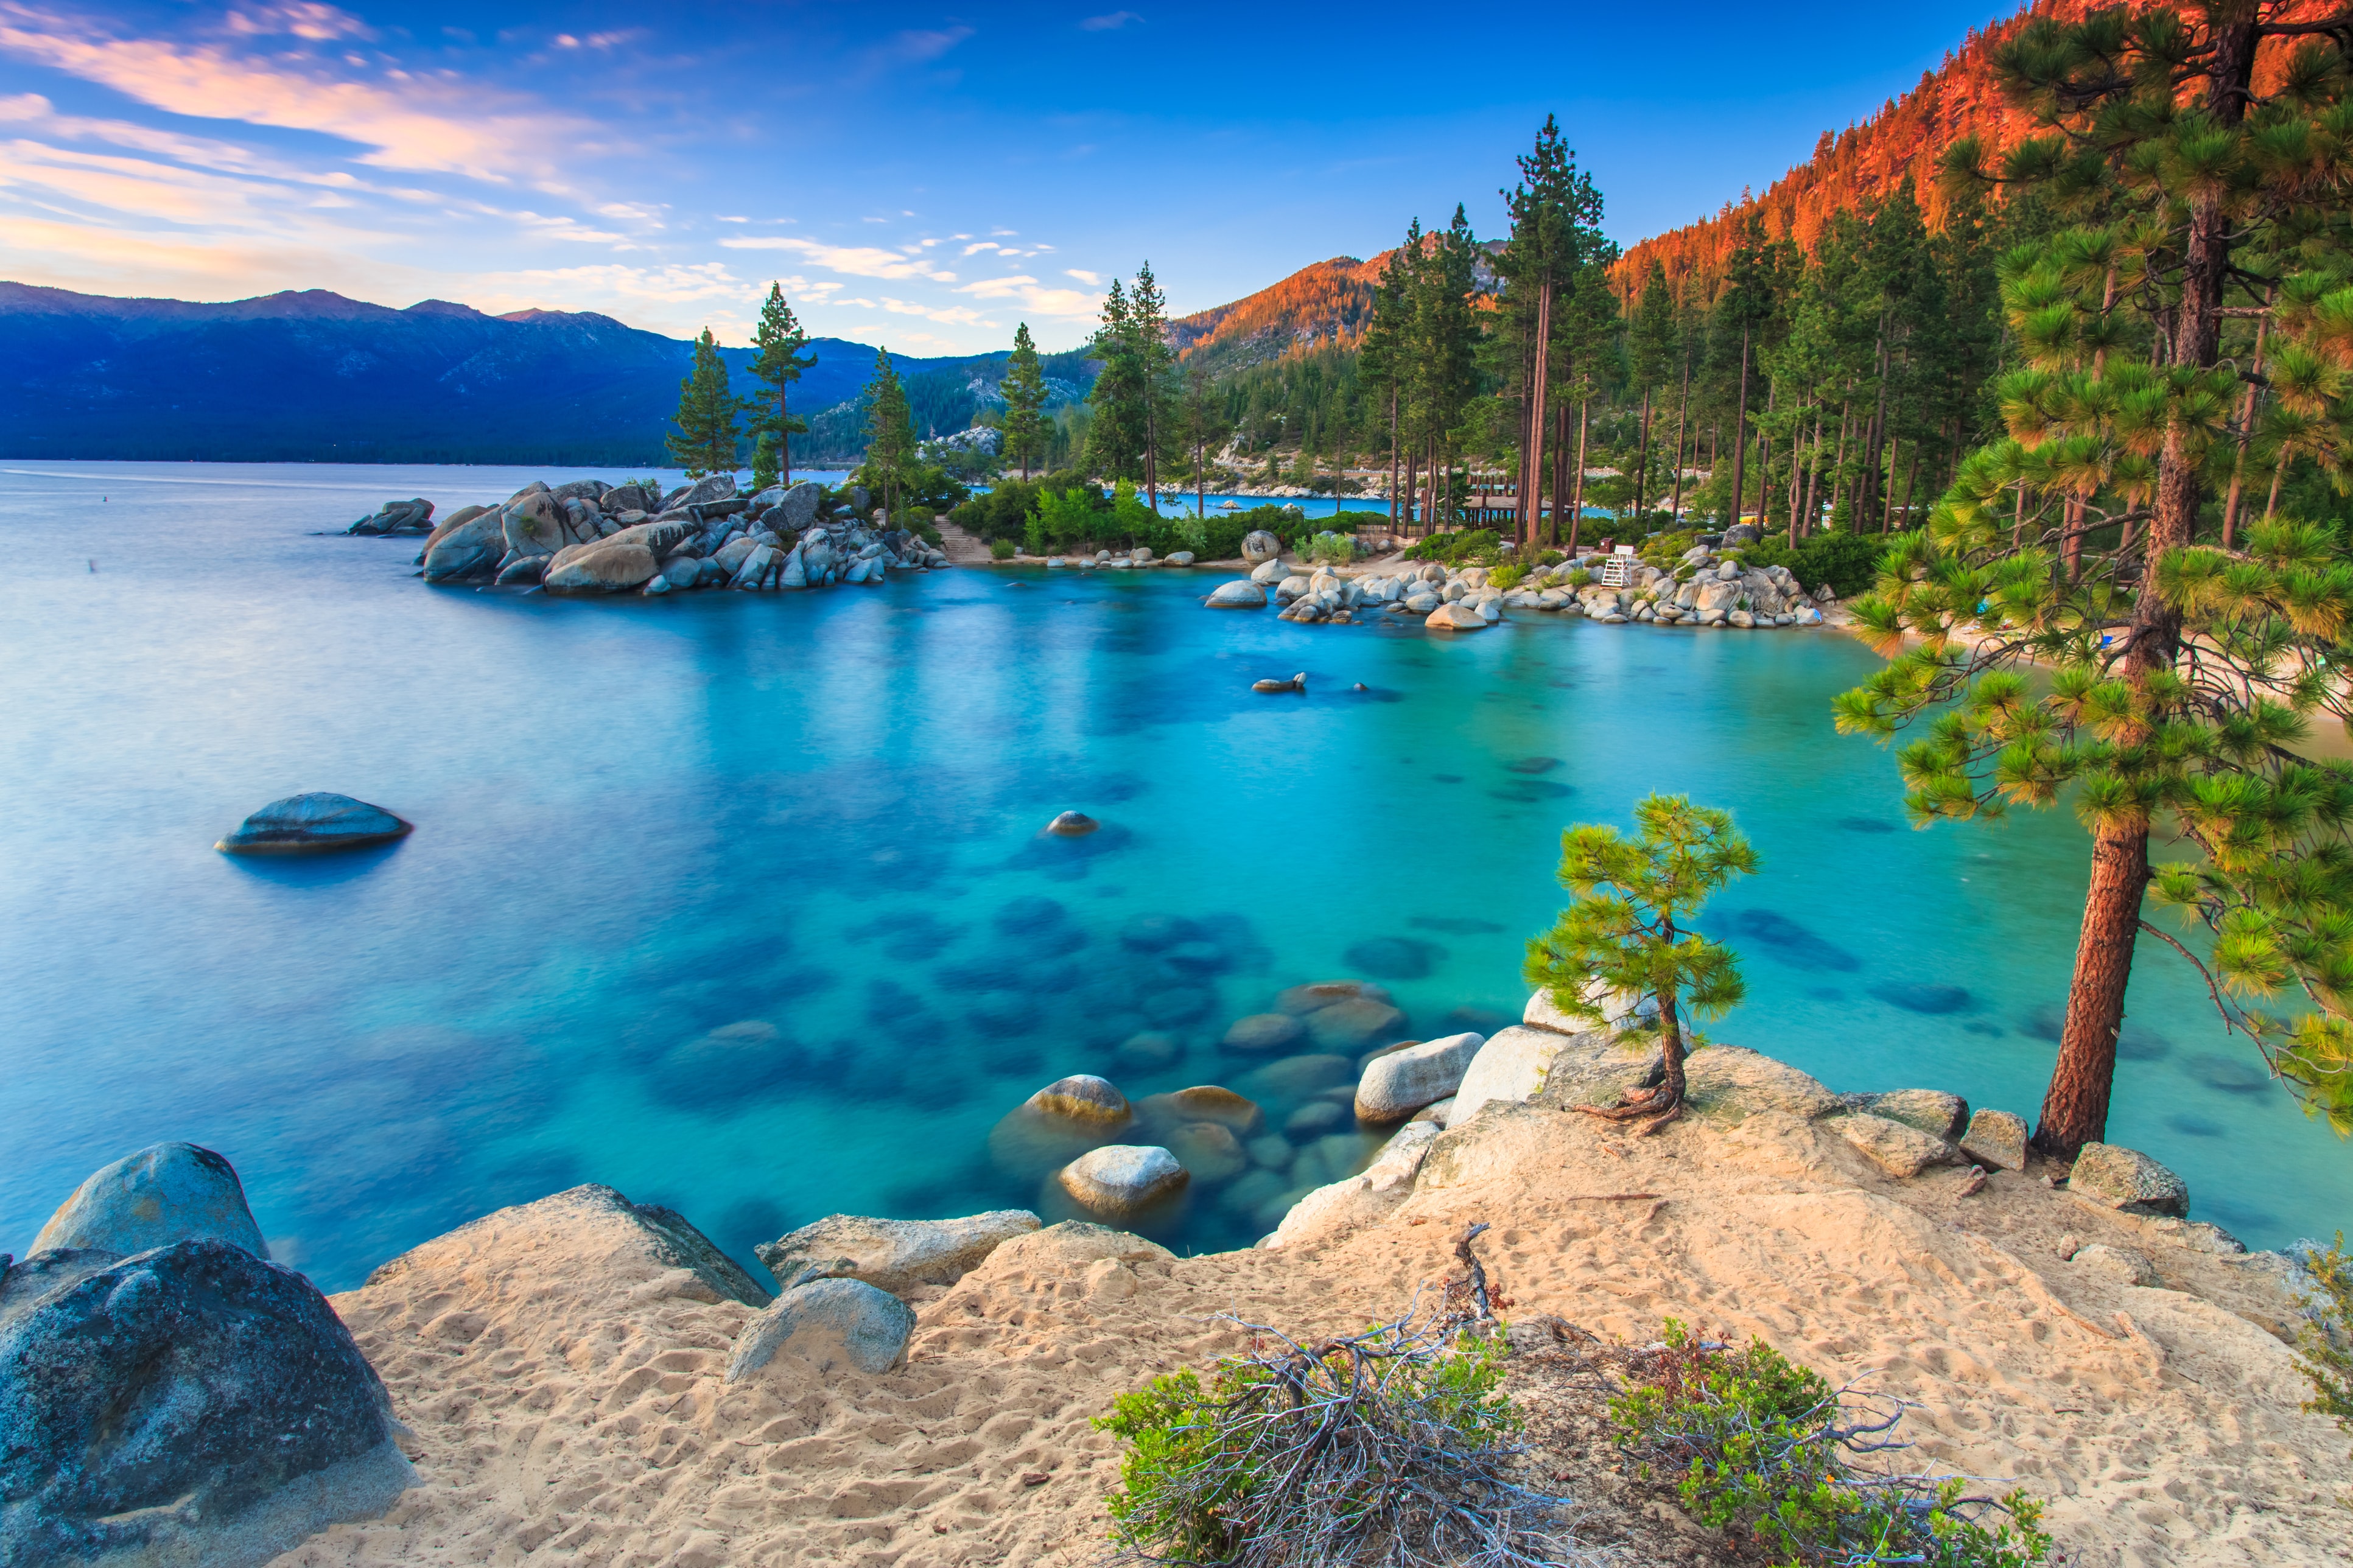 Tải ngay hình nền Lake Tahoe miễn phí để trang trí cho chiếc điện thoại của bạn với cảnh đẹp tuyệt vời của hồ nước trong xanh và núi non xung quanh. Hình nền này sẽ khiến bạn cảm thấy như đang đứng trước cảnh tượng thiên nhiên thật sự vậy!